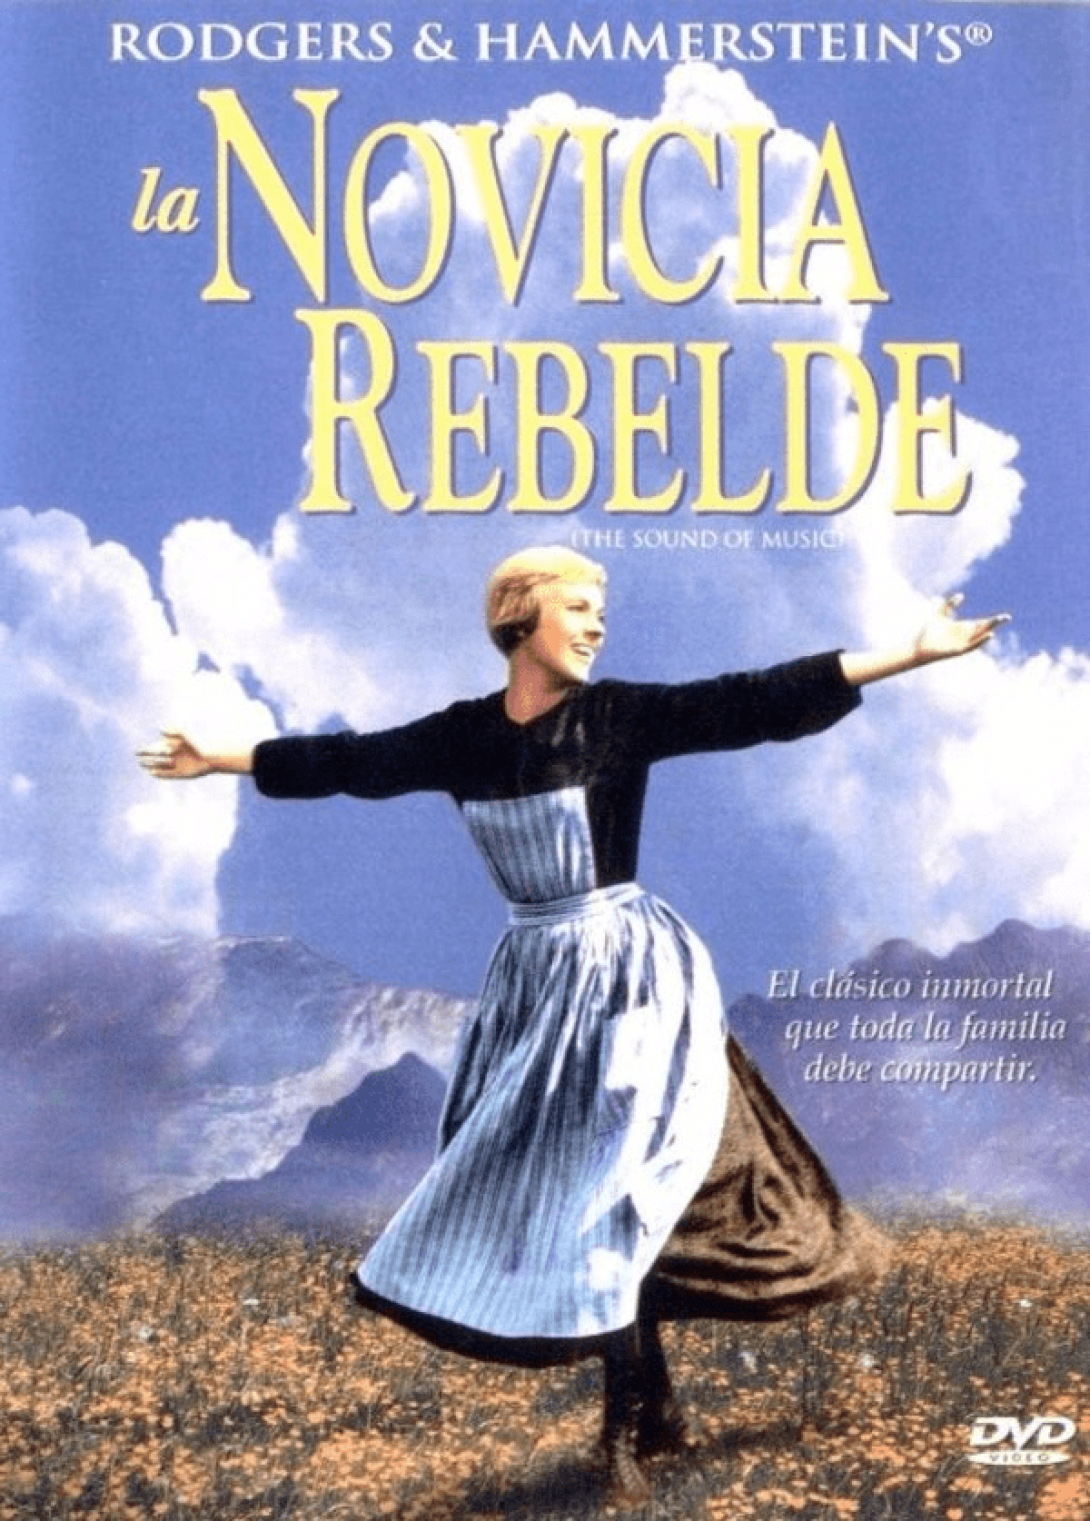 Cartel de la película "La novicia rebelde".